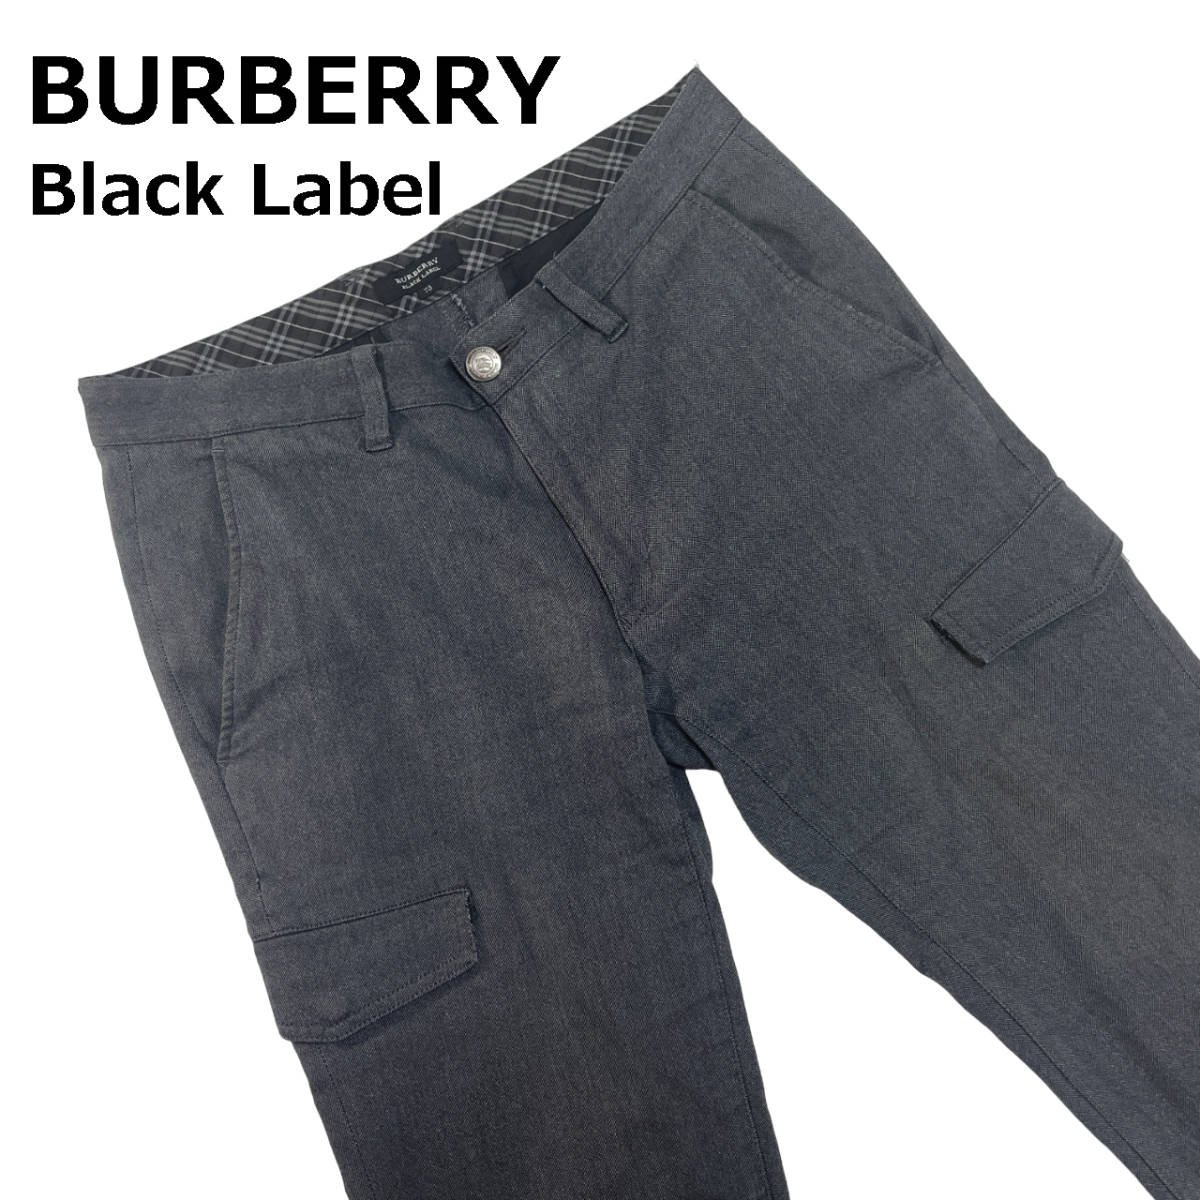 完璧 73 カーゴパンツ Label Black BURBERRY (約78cm) コットン スラックス グレー フラップポケット バーバリーブラックレーベル ノバチェック ボトムス